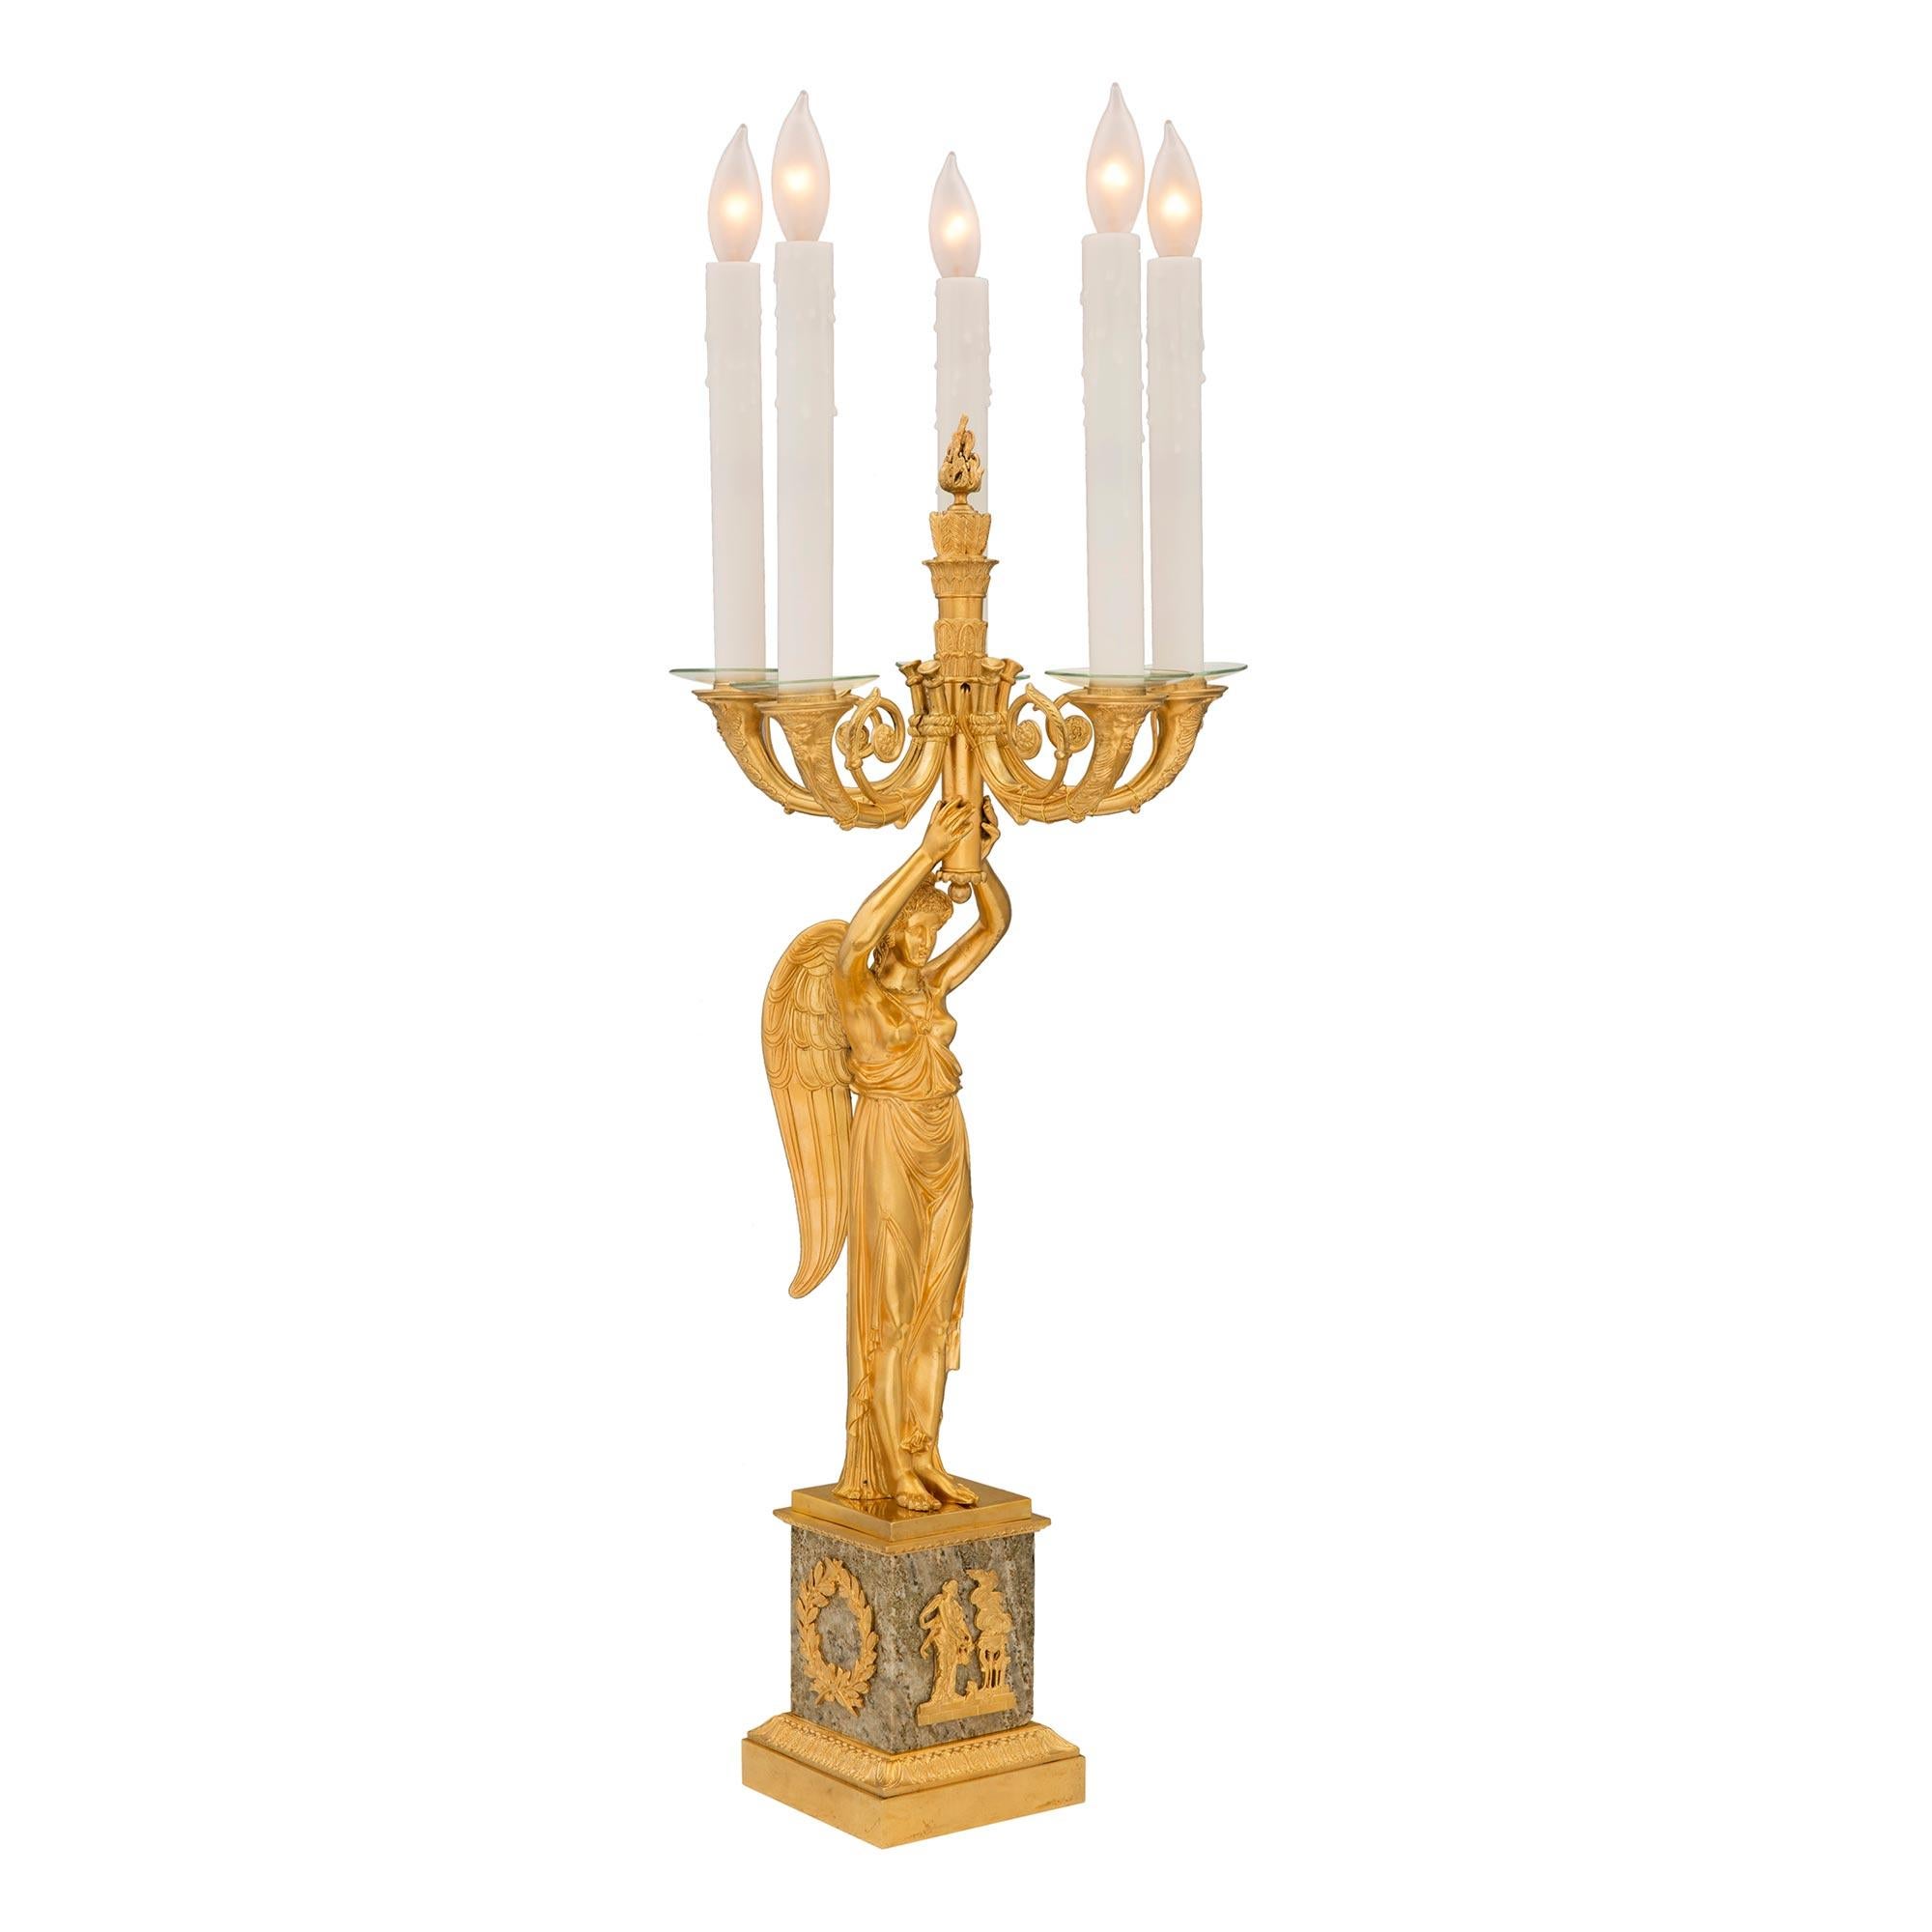 Une exquise paire de lampes à cinq bras de style Empire du 19ème siècle, en bronze doré et granit, d'après un modèle de Claude Galle. Chaque lampe est surélevée par une base carrée en granit avec un magnifique bandeau de feuillage en bronze doré,